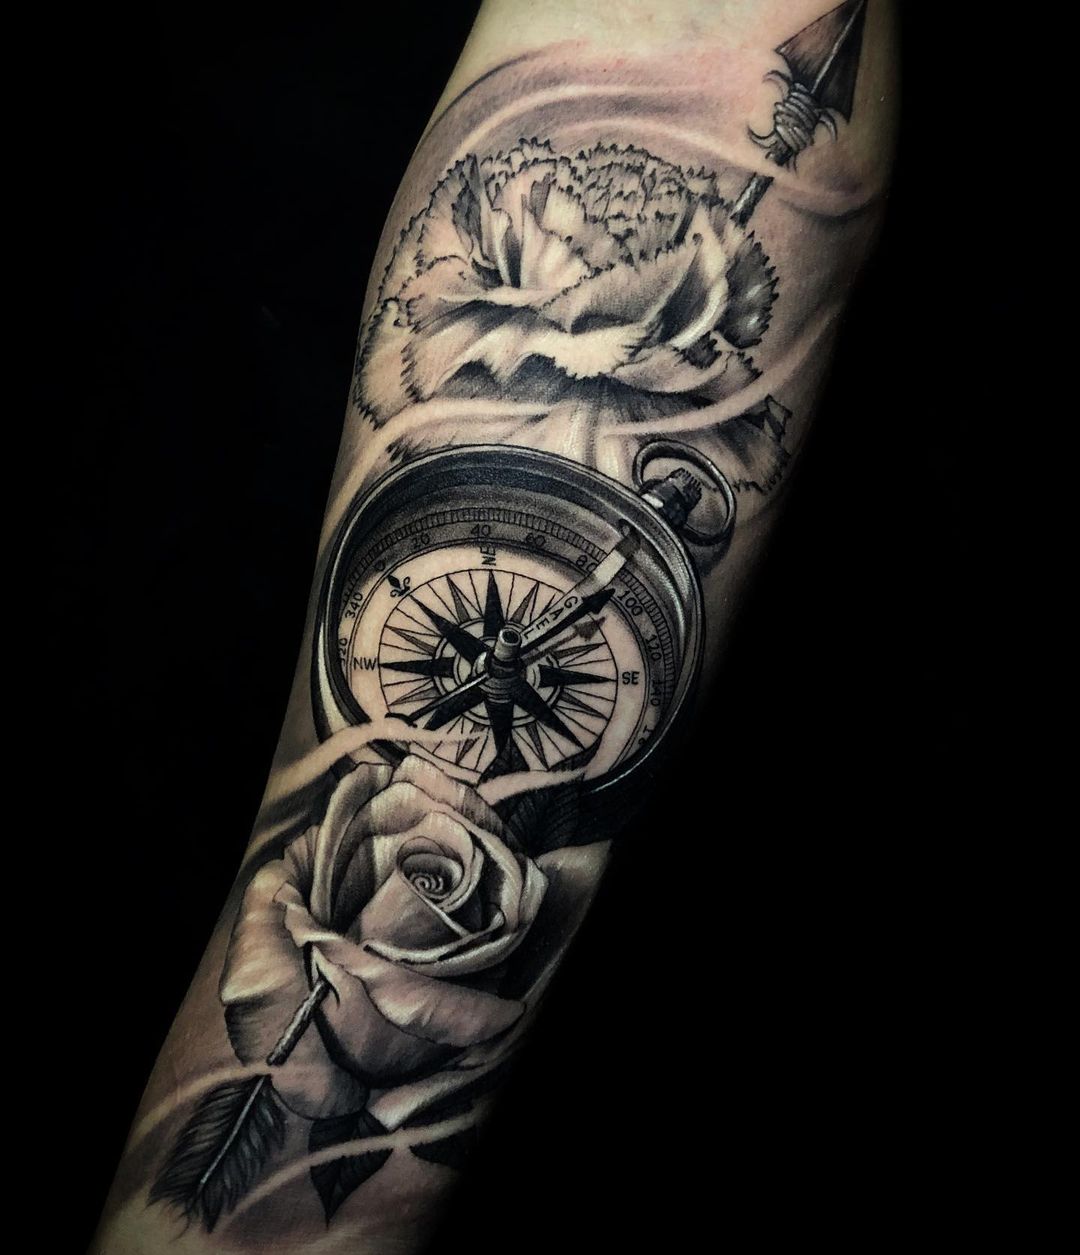 Inner arm compass tattoo. @rivington_tattoo #pirateshit #n… | Flickr